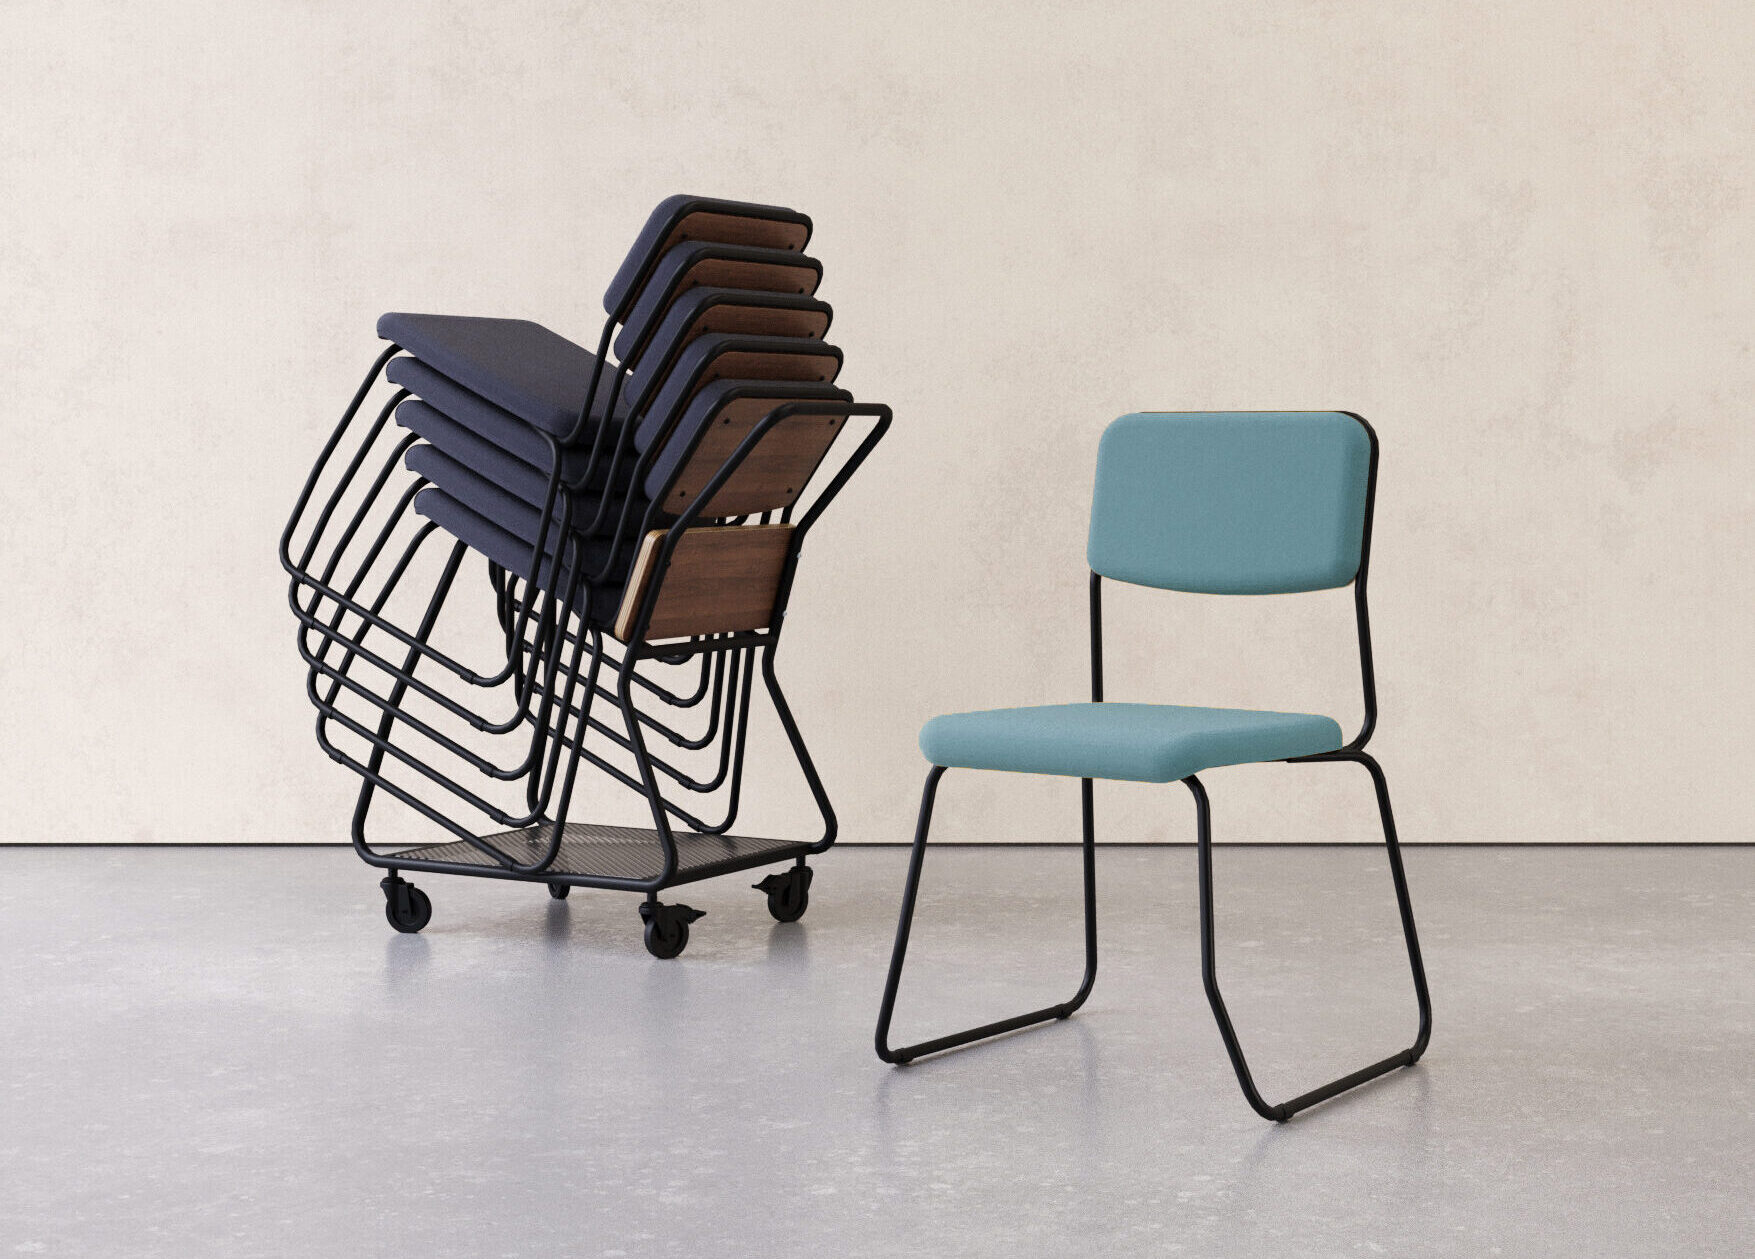 cadeiras empilhadas à esquerda, e cadeira estofada azul com estrutura em preto à direita